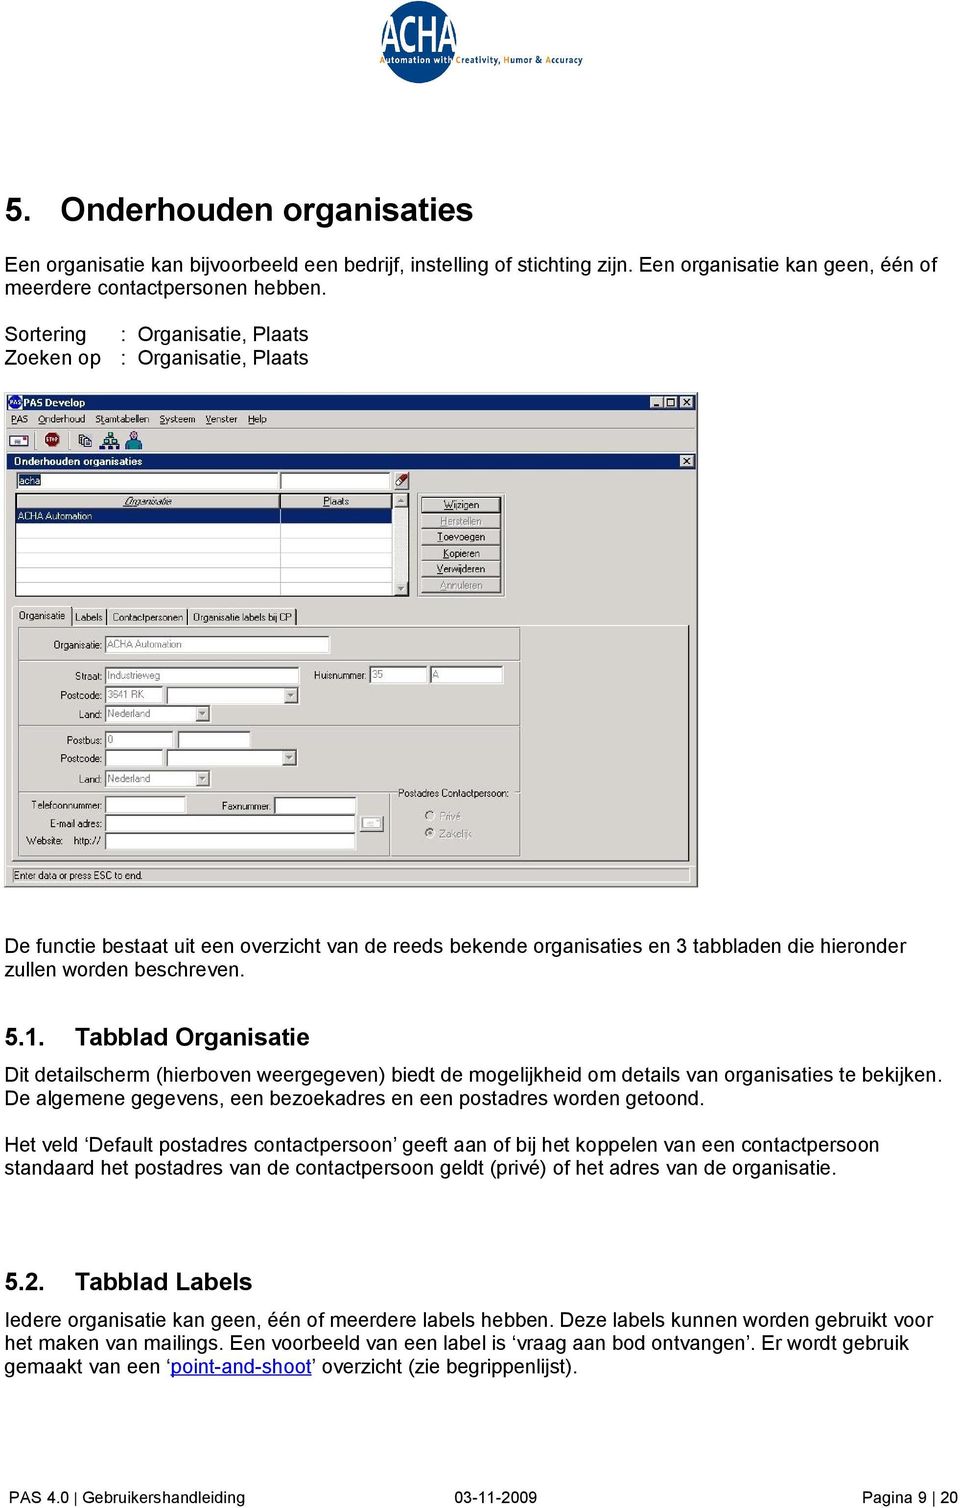 Tabblad Organisatie Dit detailscherm (hierboven weergegeven) biedt de mogelijkheid om details van organisaties te bekijken. De algemene gegevens, een bezoekadres en een postadres worden getoond.